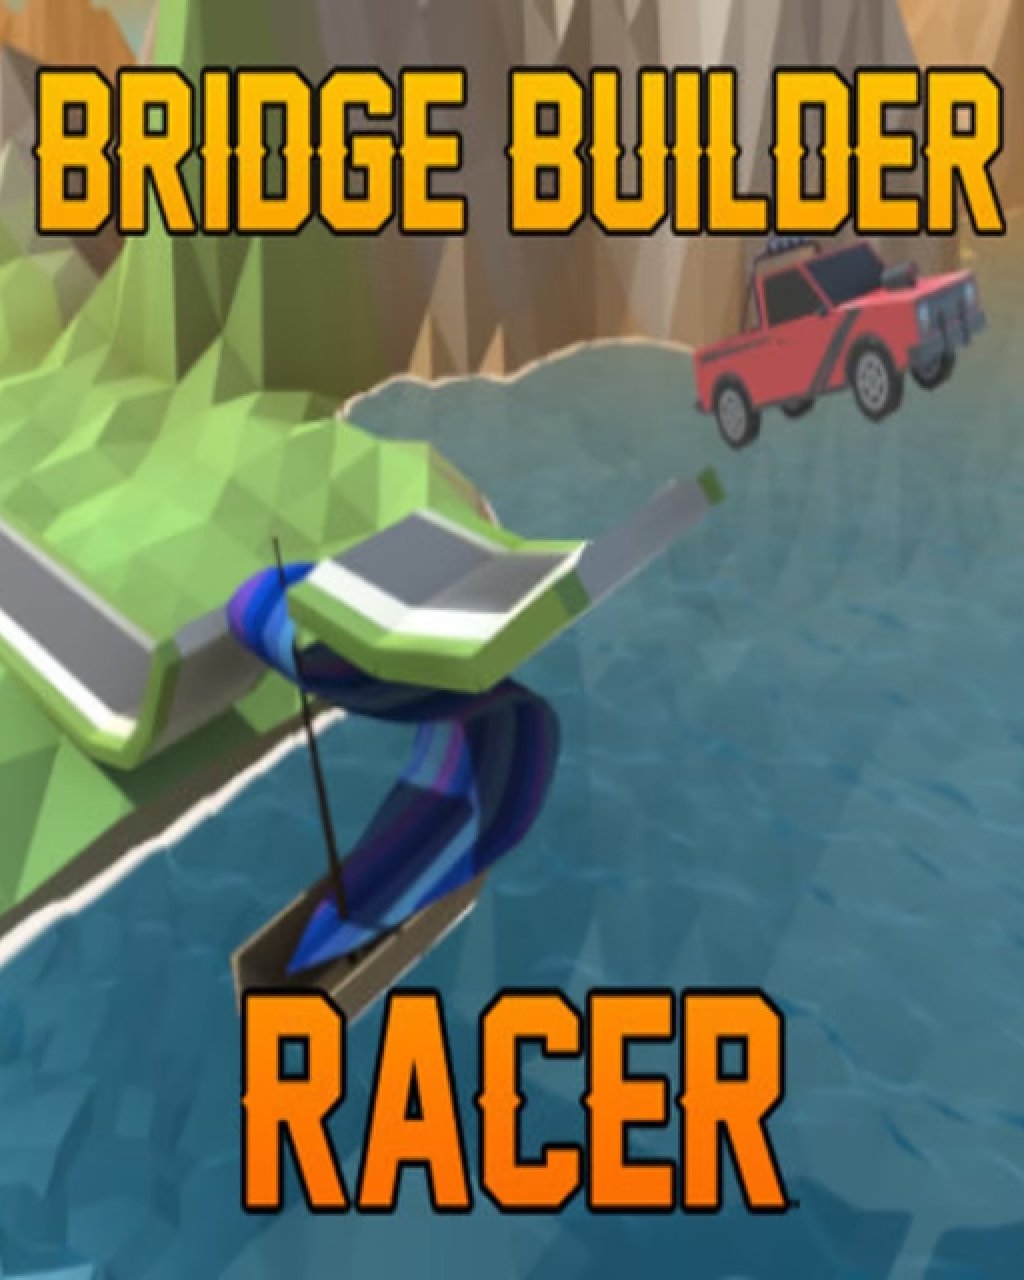 Bridge Builder Racer